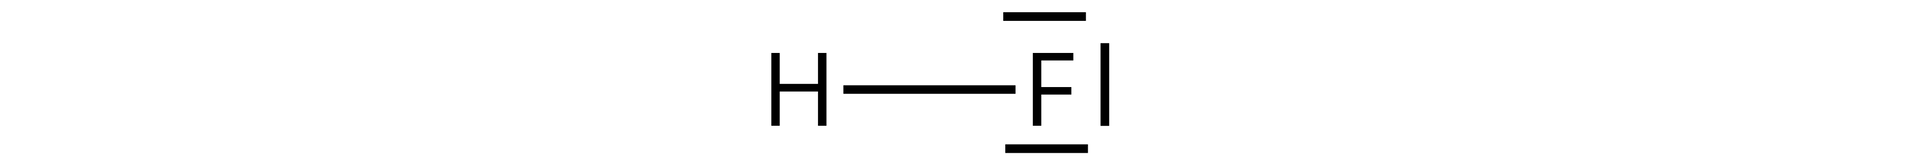 Ilustracja przedstawia wzór kreskowy cząsteczki HF. Między atomami H i F znajduje się kreska oznaczająca wiązanie pojedyncze. Przy atomie fluoru dodatkowo znajdują się trzy kreski oznaczające wolne pary elektronowe.